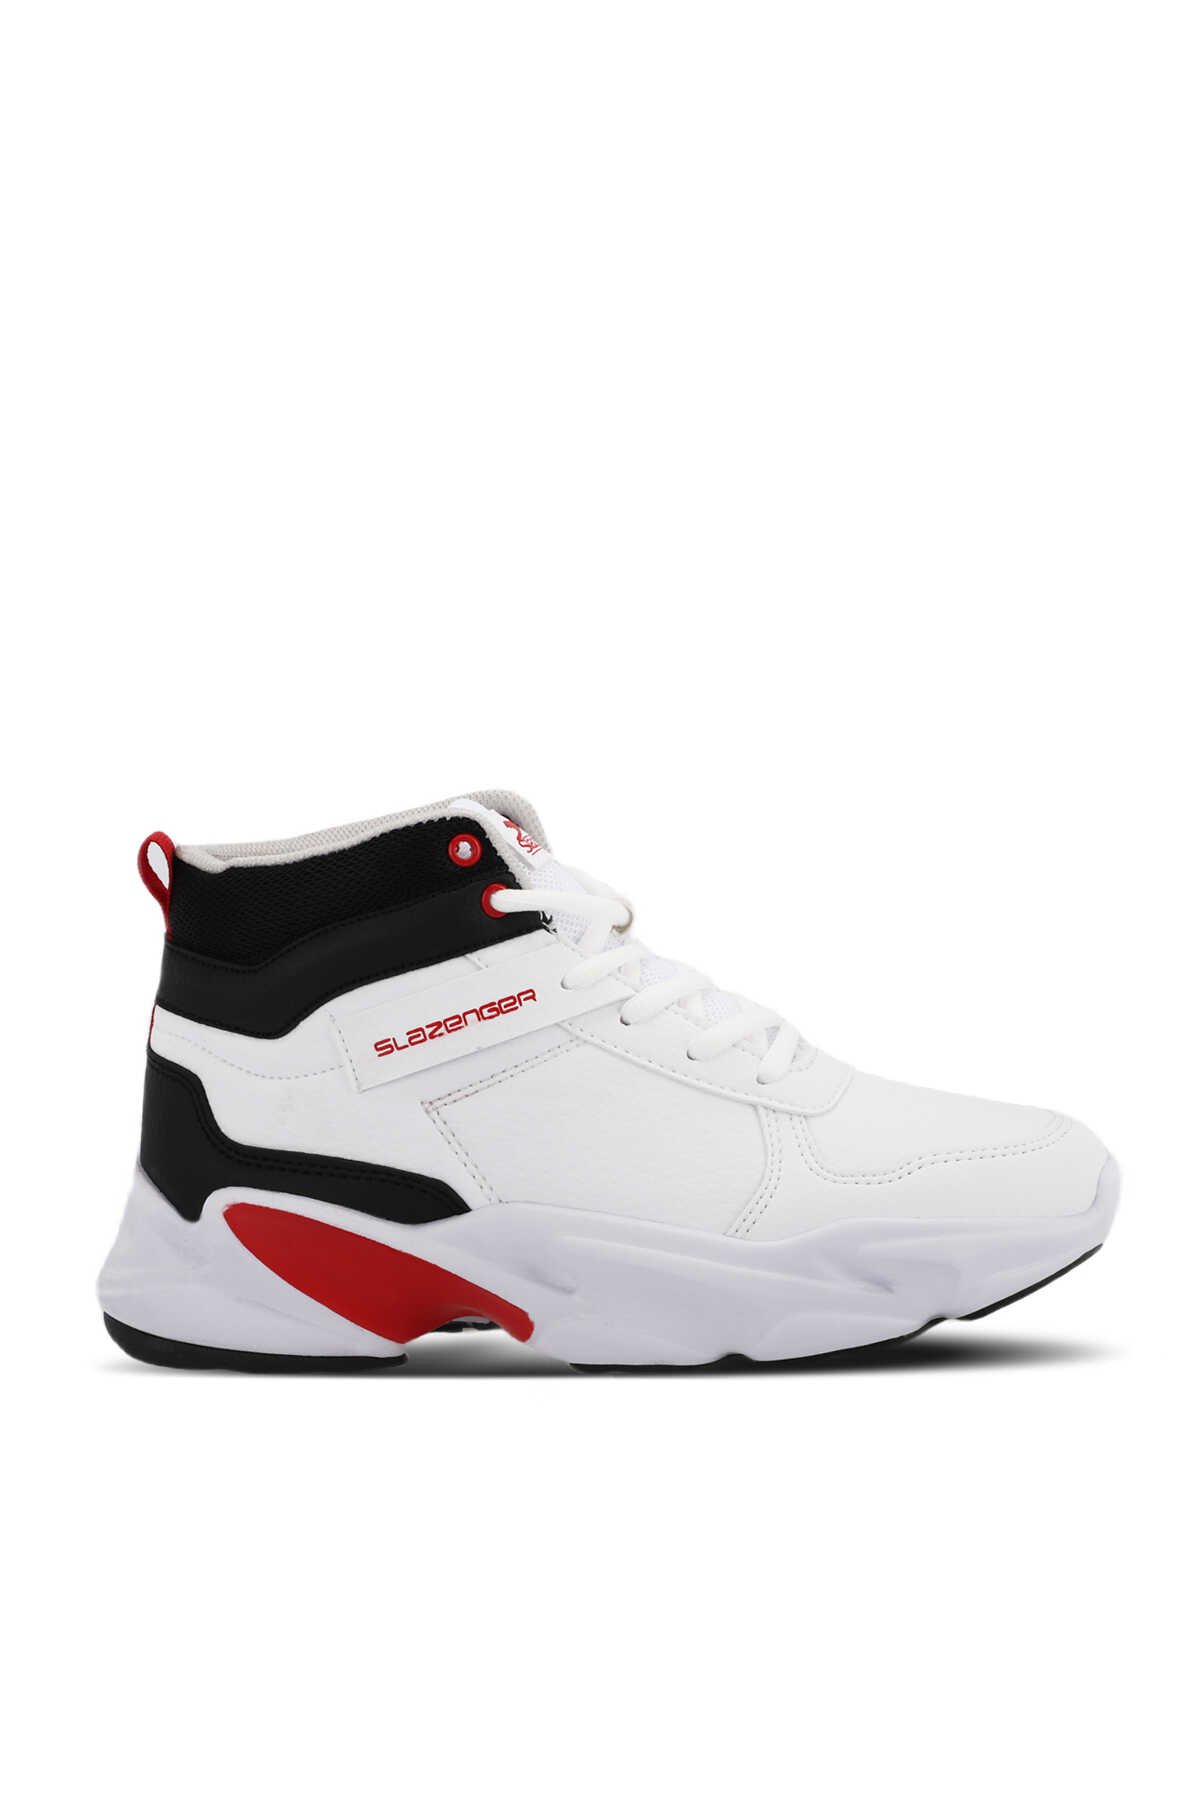 Slazenger - Slazenger PATTERN Sneaker Kadın Ayakkabı Beyaz / Kırmızı